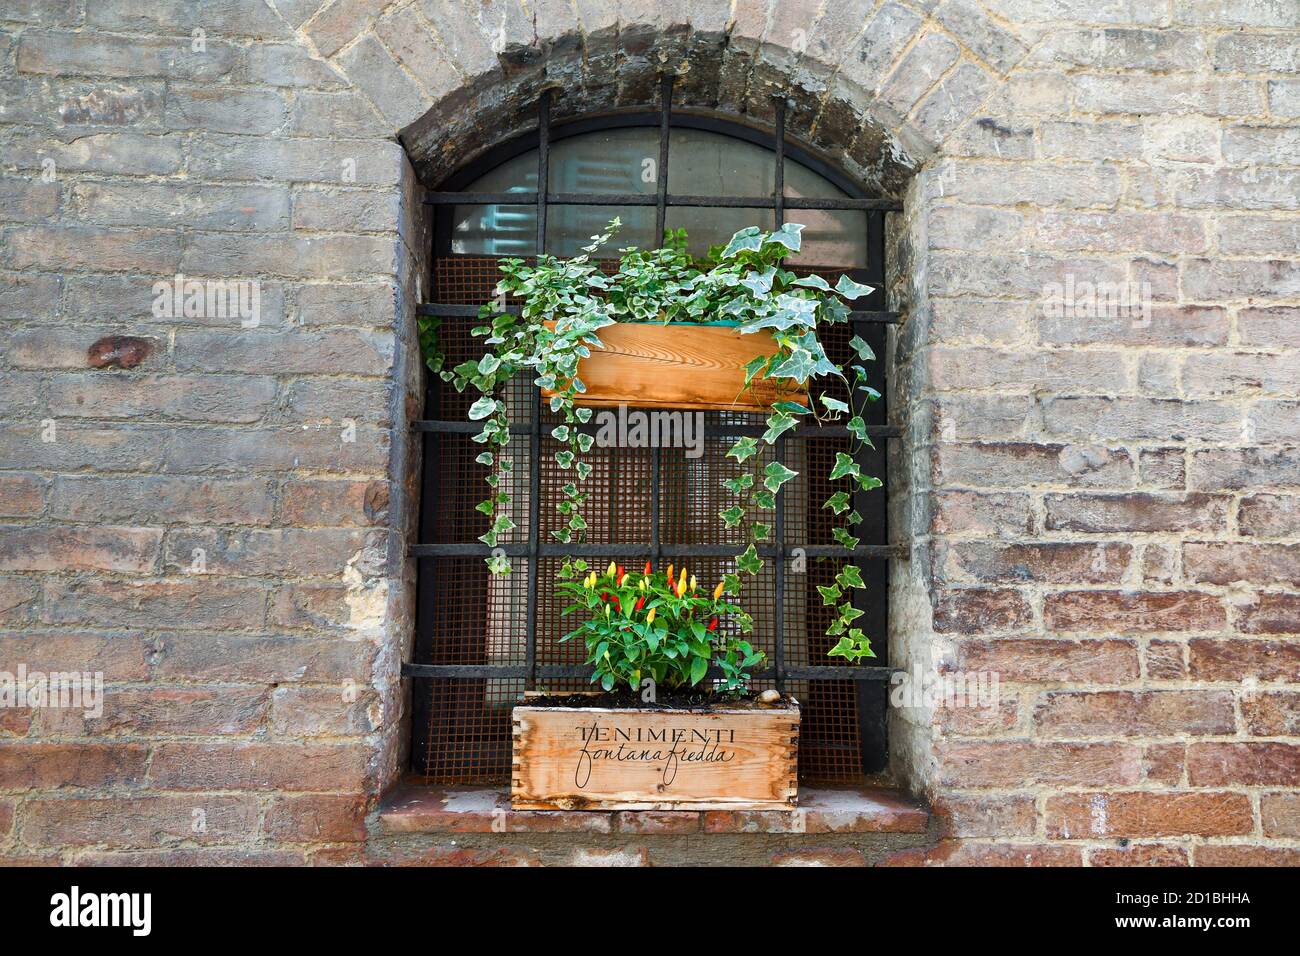 Gros plan de la fenêtre voûtée d'une maison médiévale en brique avec des plantes en pot (lierre, poivrons) sur le rebord de la fenêtre, Sienne, Toscane, Italie Banque D'Images